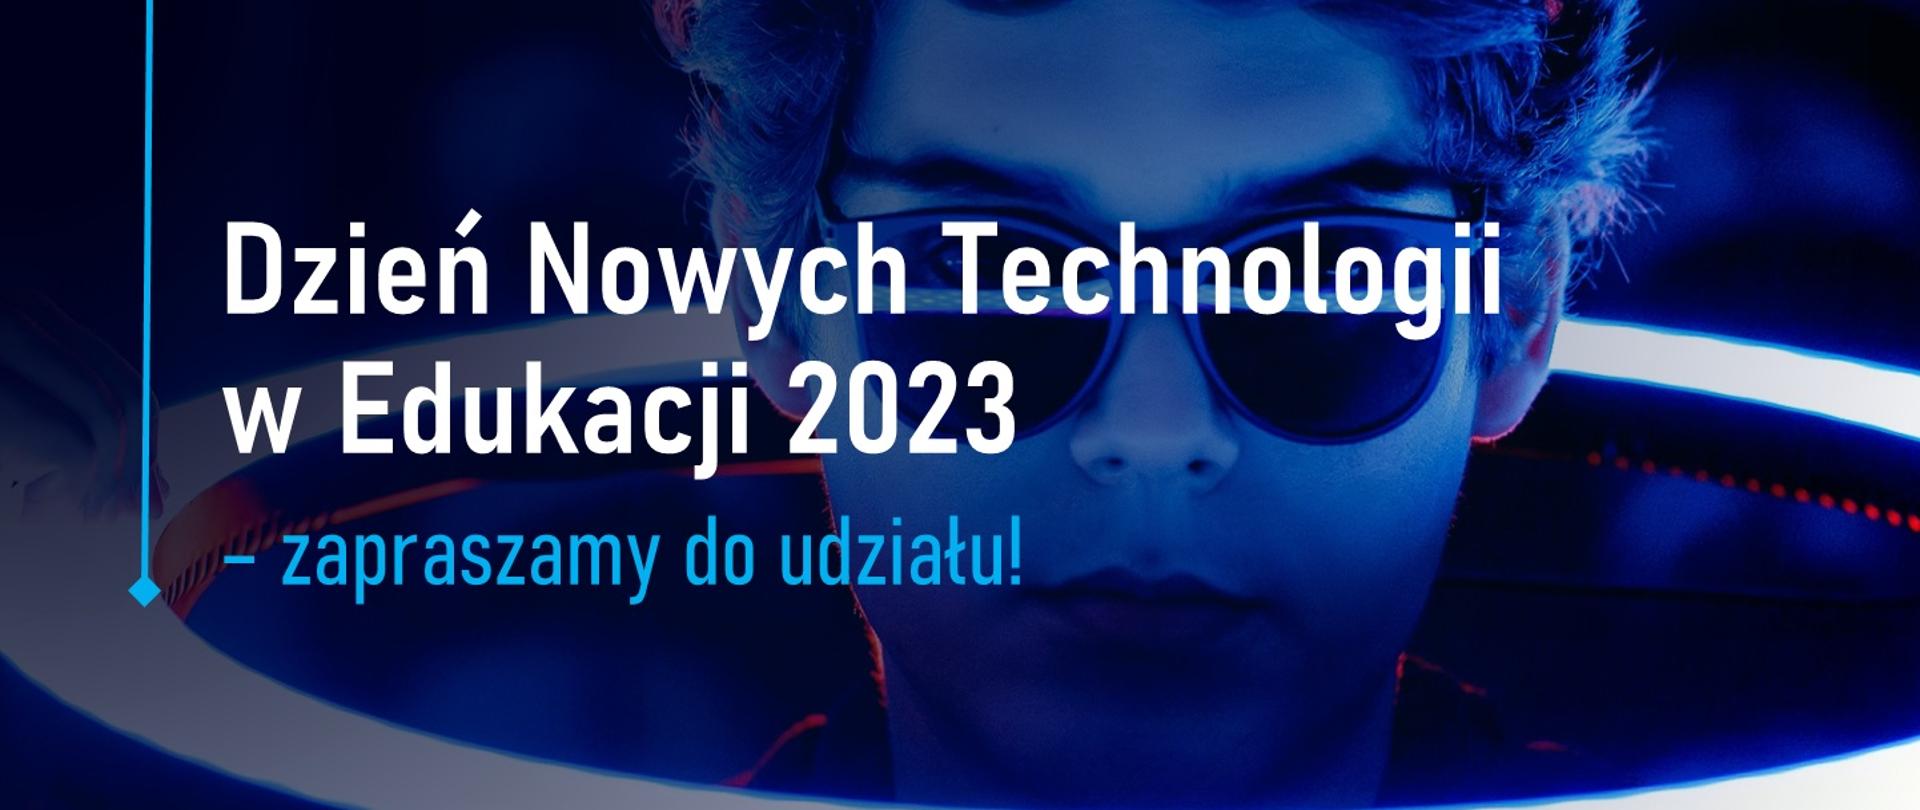 Grafika - na niebieskim tle zarys twarzy człowieka w ciemnych okularach i napis Dzień Nowych Technologii w Edukacji 2023 – zapraszamy do udziału.